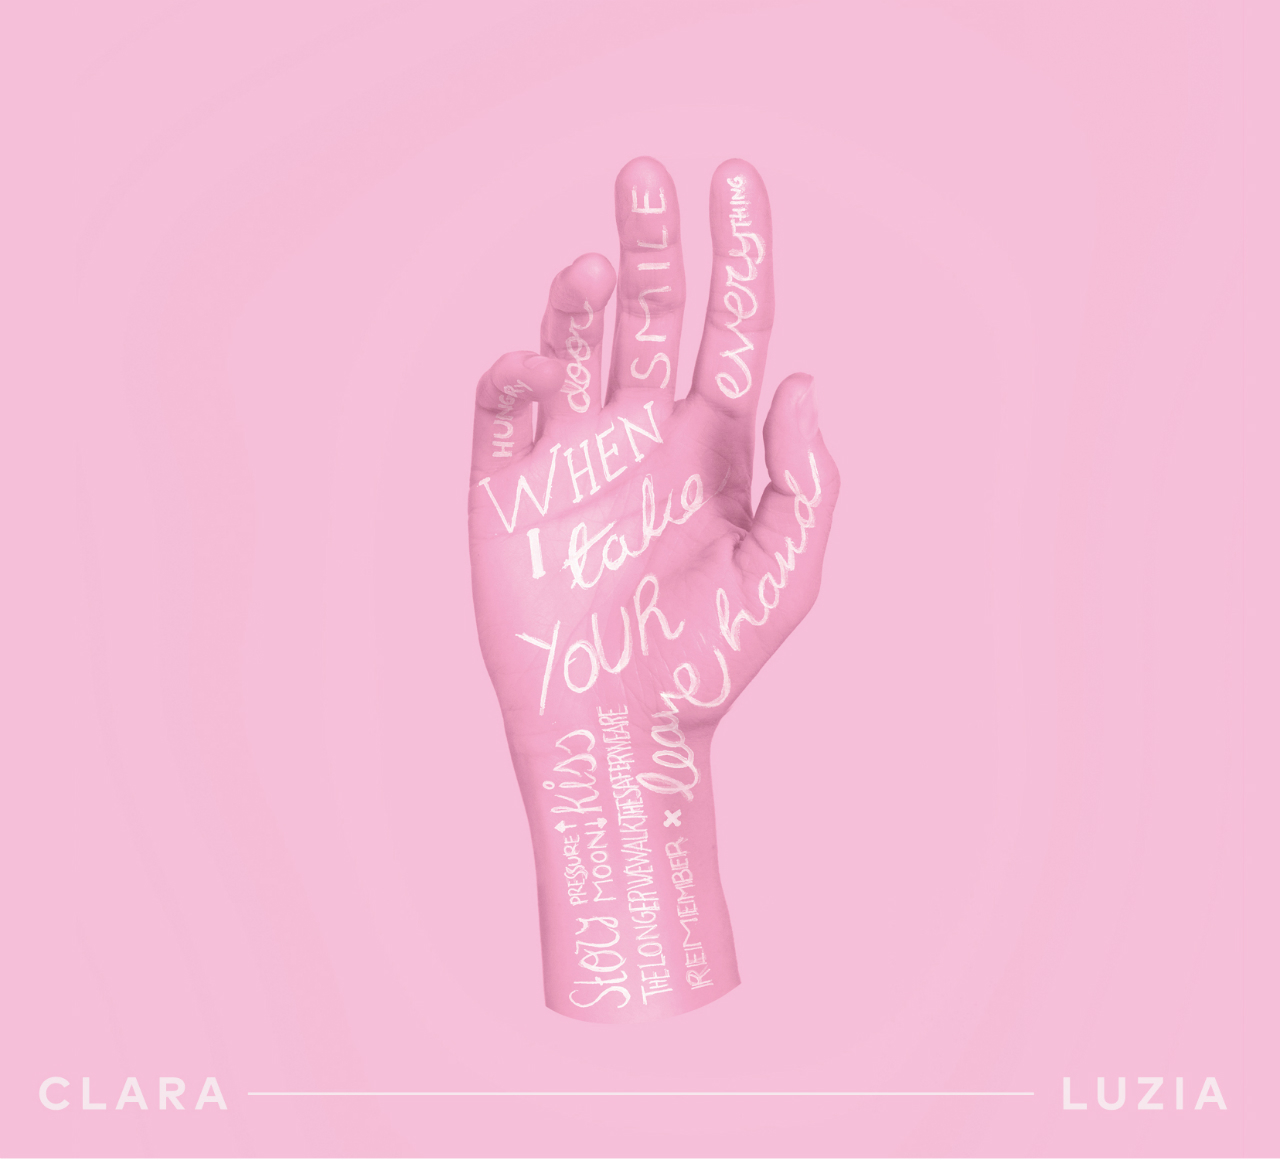 Plattencover "When I Take Your Hand" von Clara Luzia, eine tätowierte Hand, alles in pinker Farbe getaucht